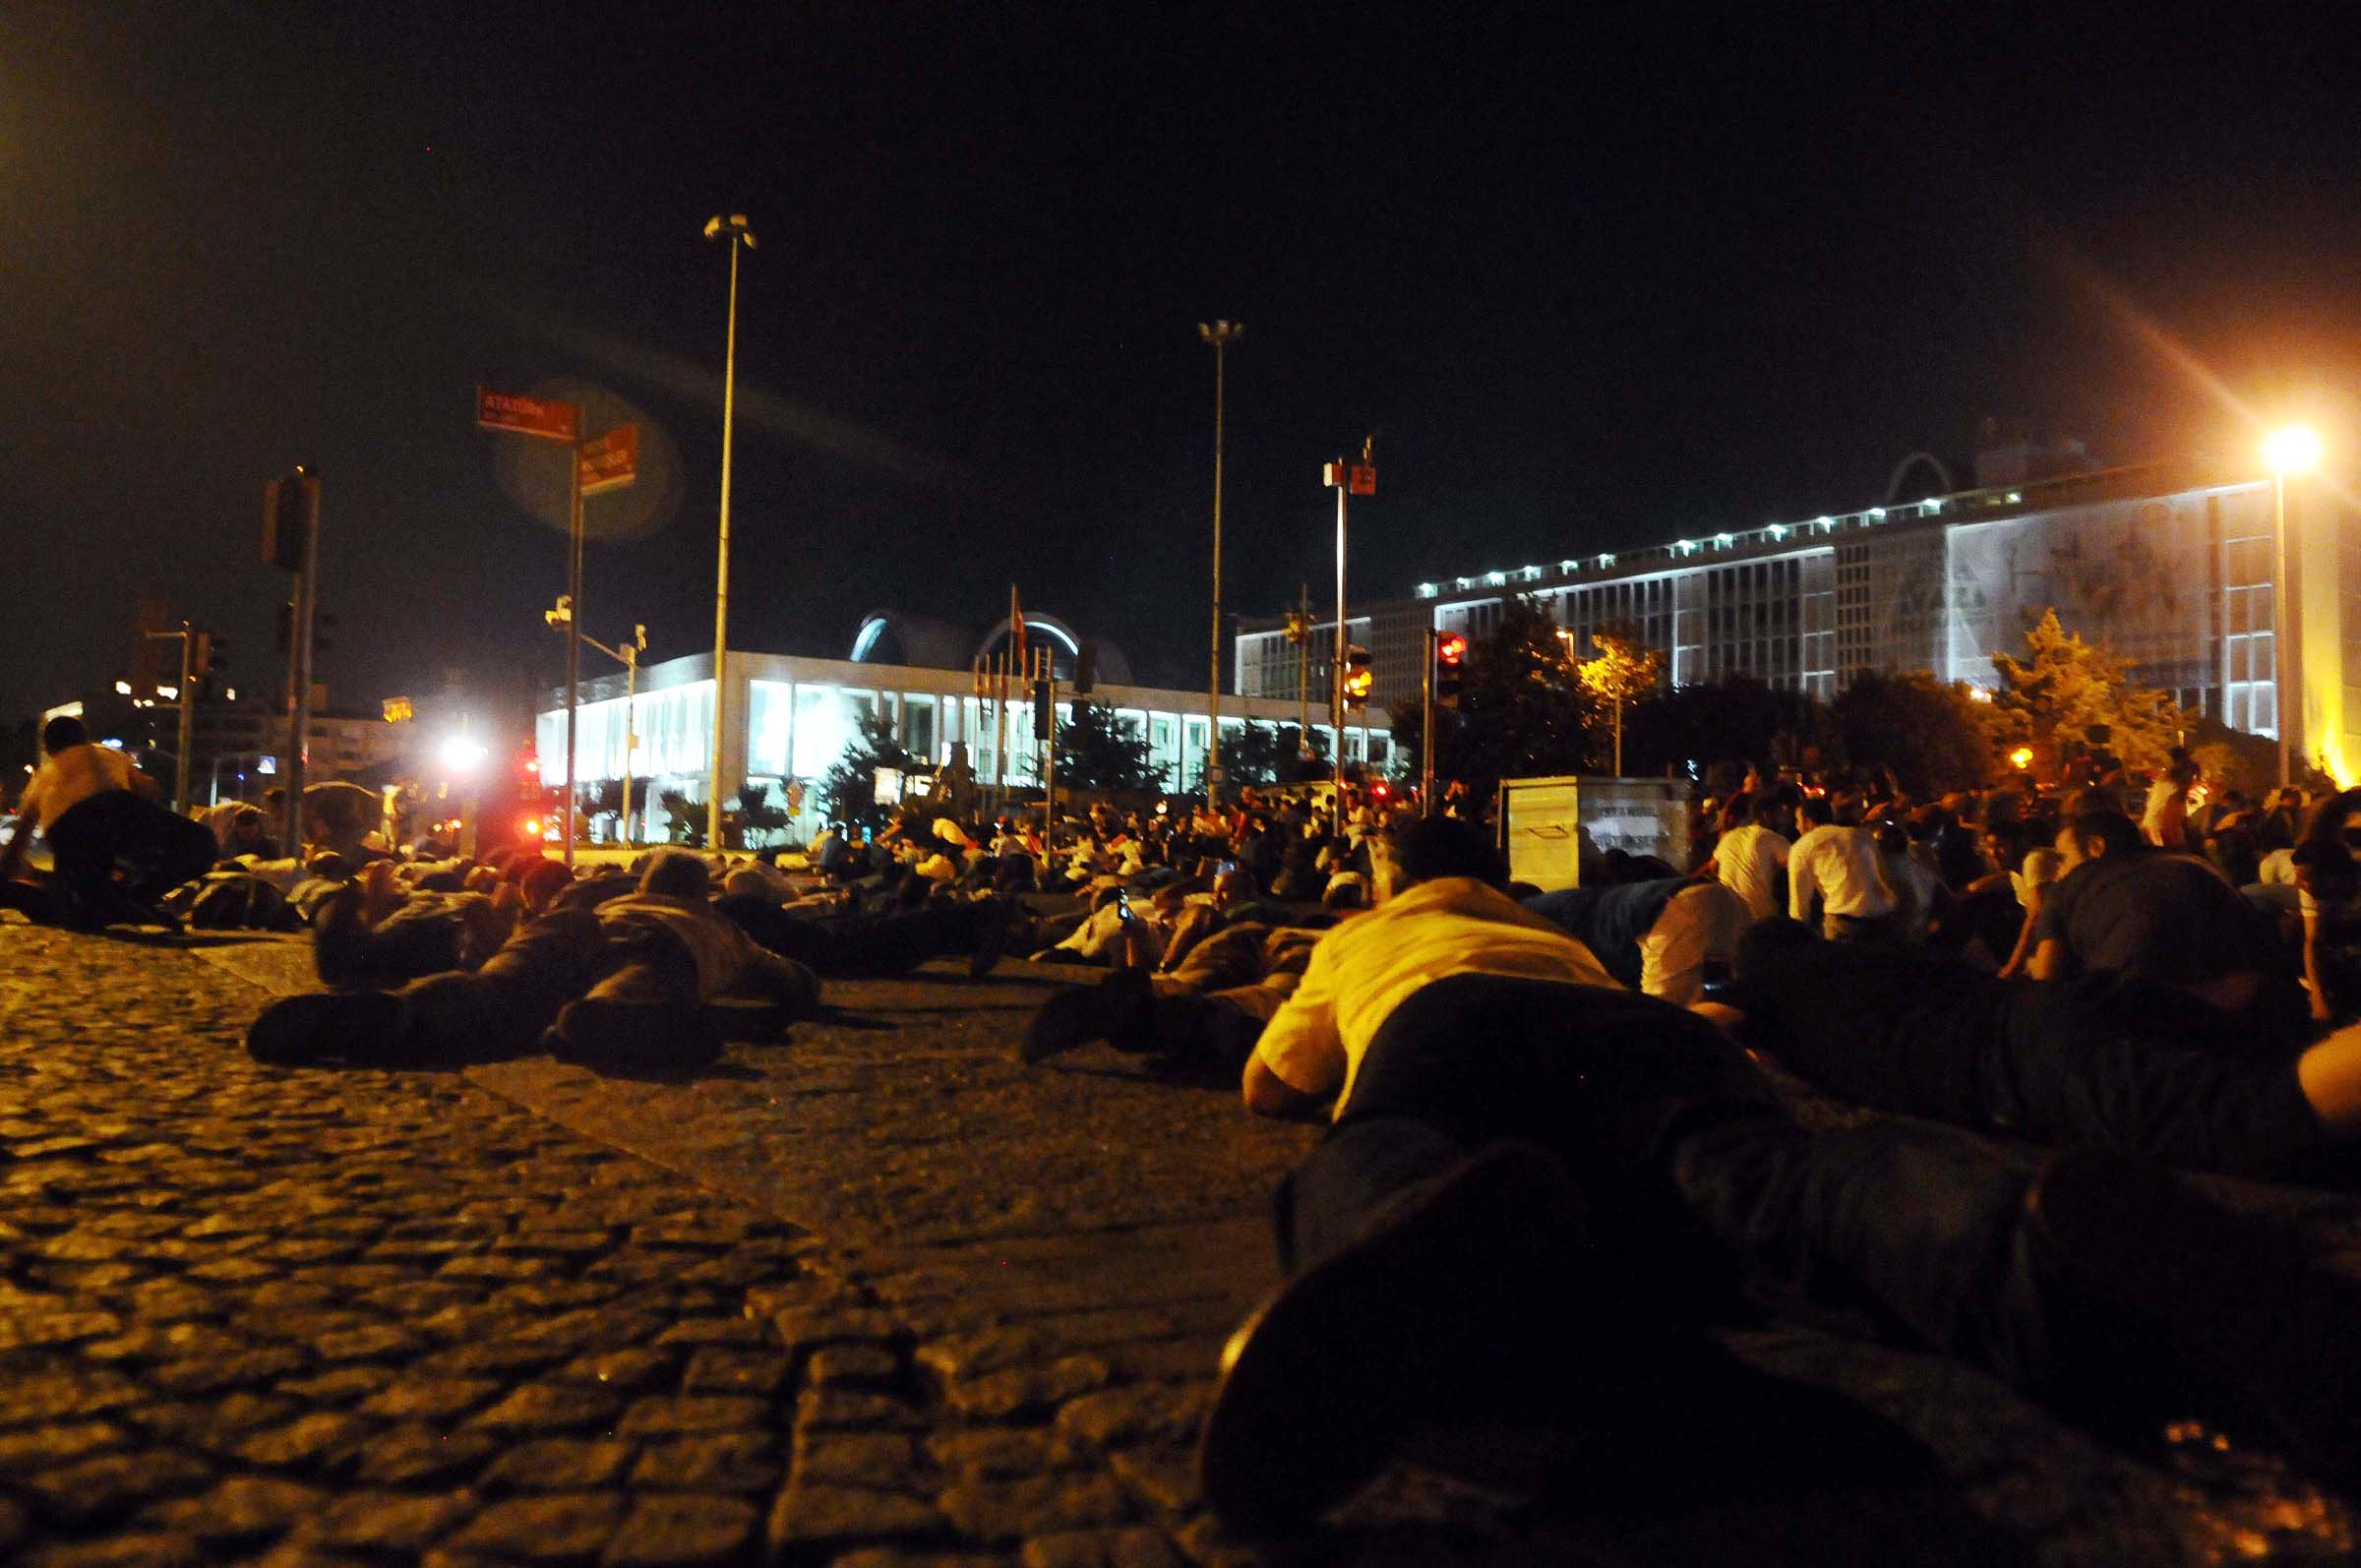 В результате огня, открытого путчистами, за пределами здания Администрации города Стамбул, возле которого произошло одно из самых ожесточенных столкновений, гражданские лица, в целях безопасности, бросились на землю.